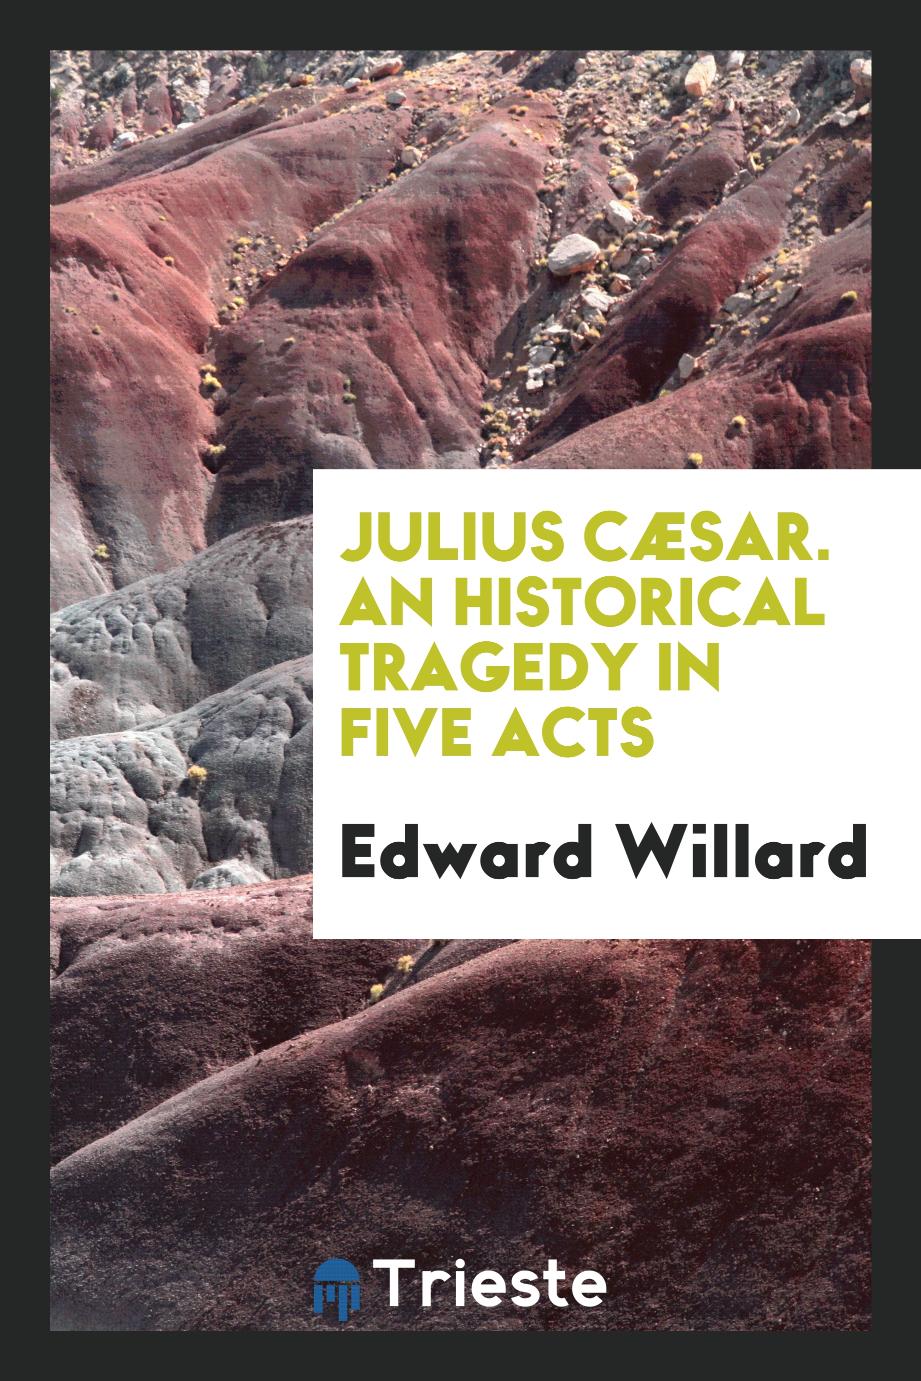 Edward Willard - Julius Cæsar. An Historical Tragedy in Five Acts